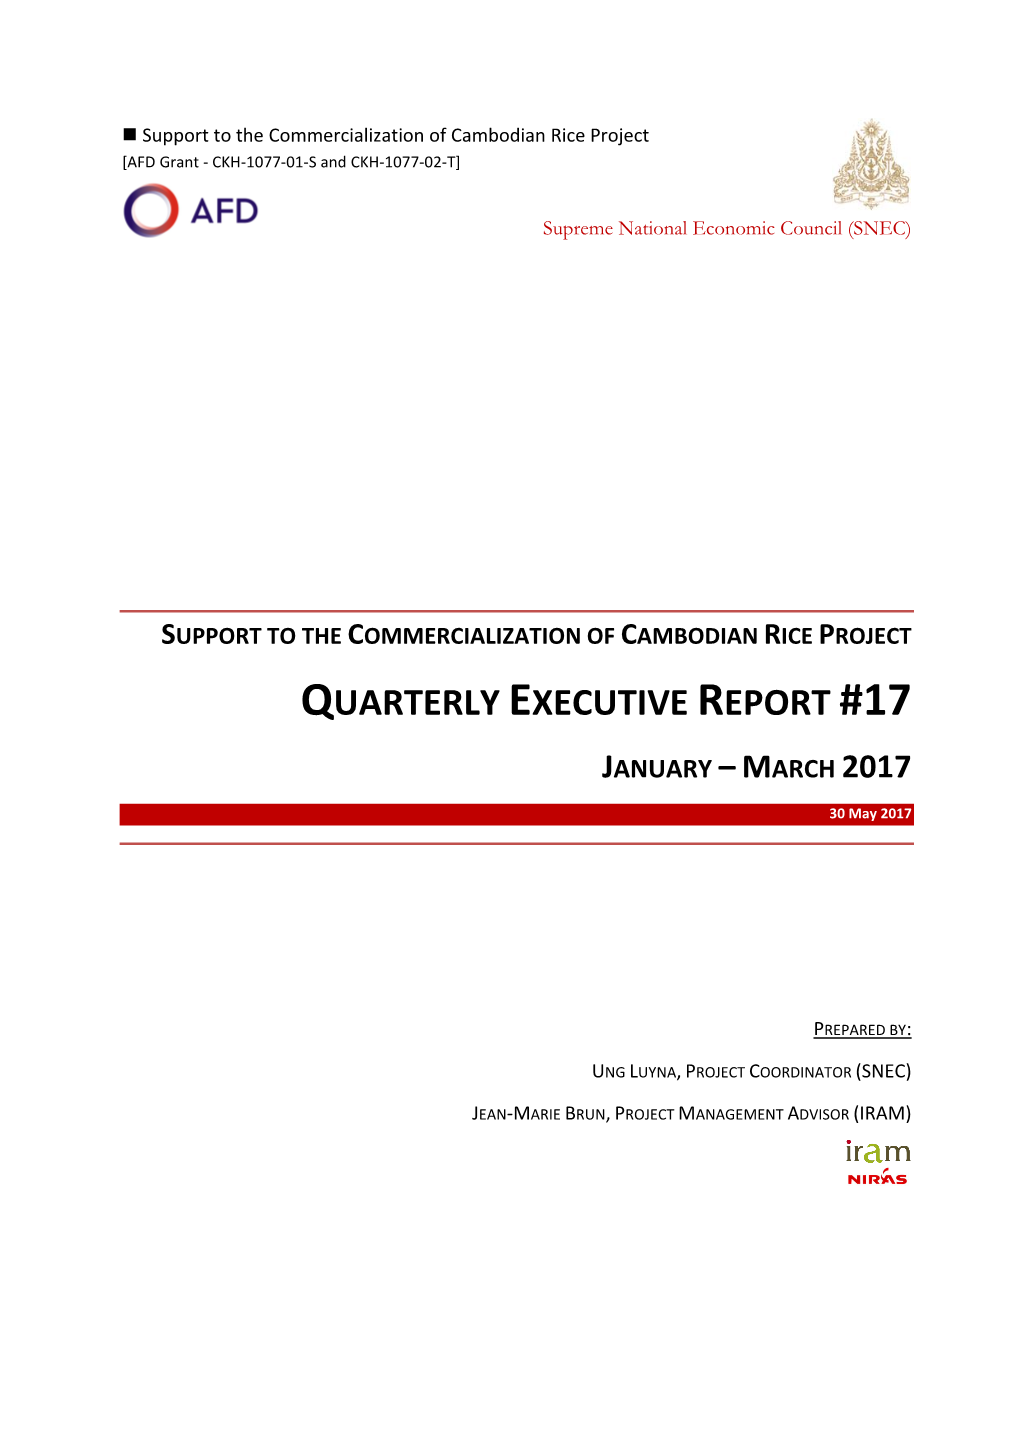 Quarterly Executive Report #17